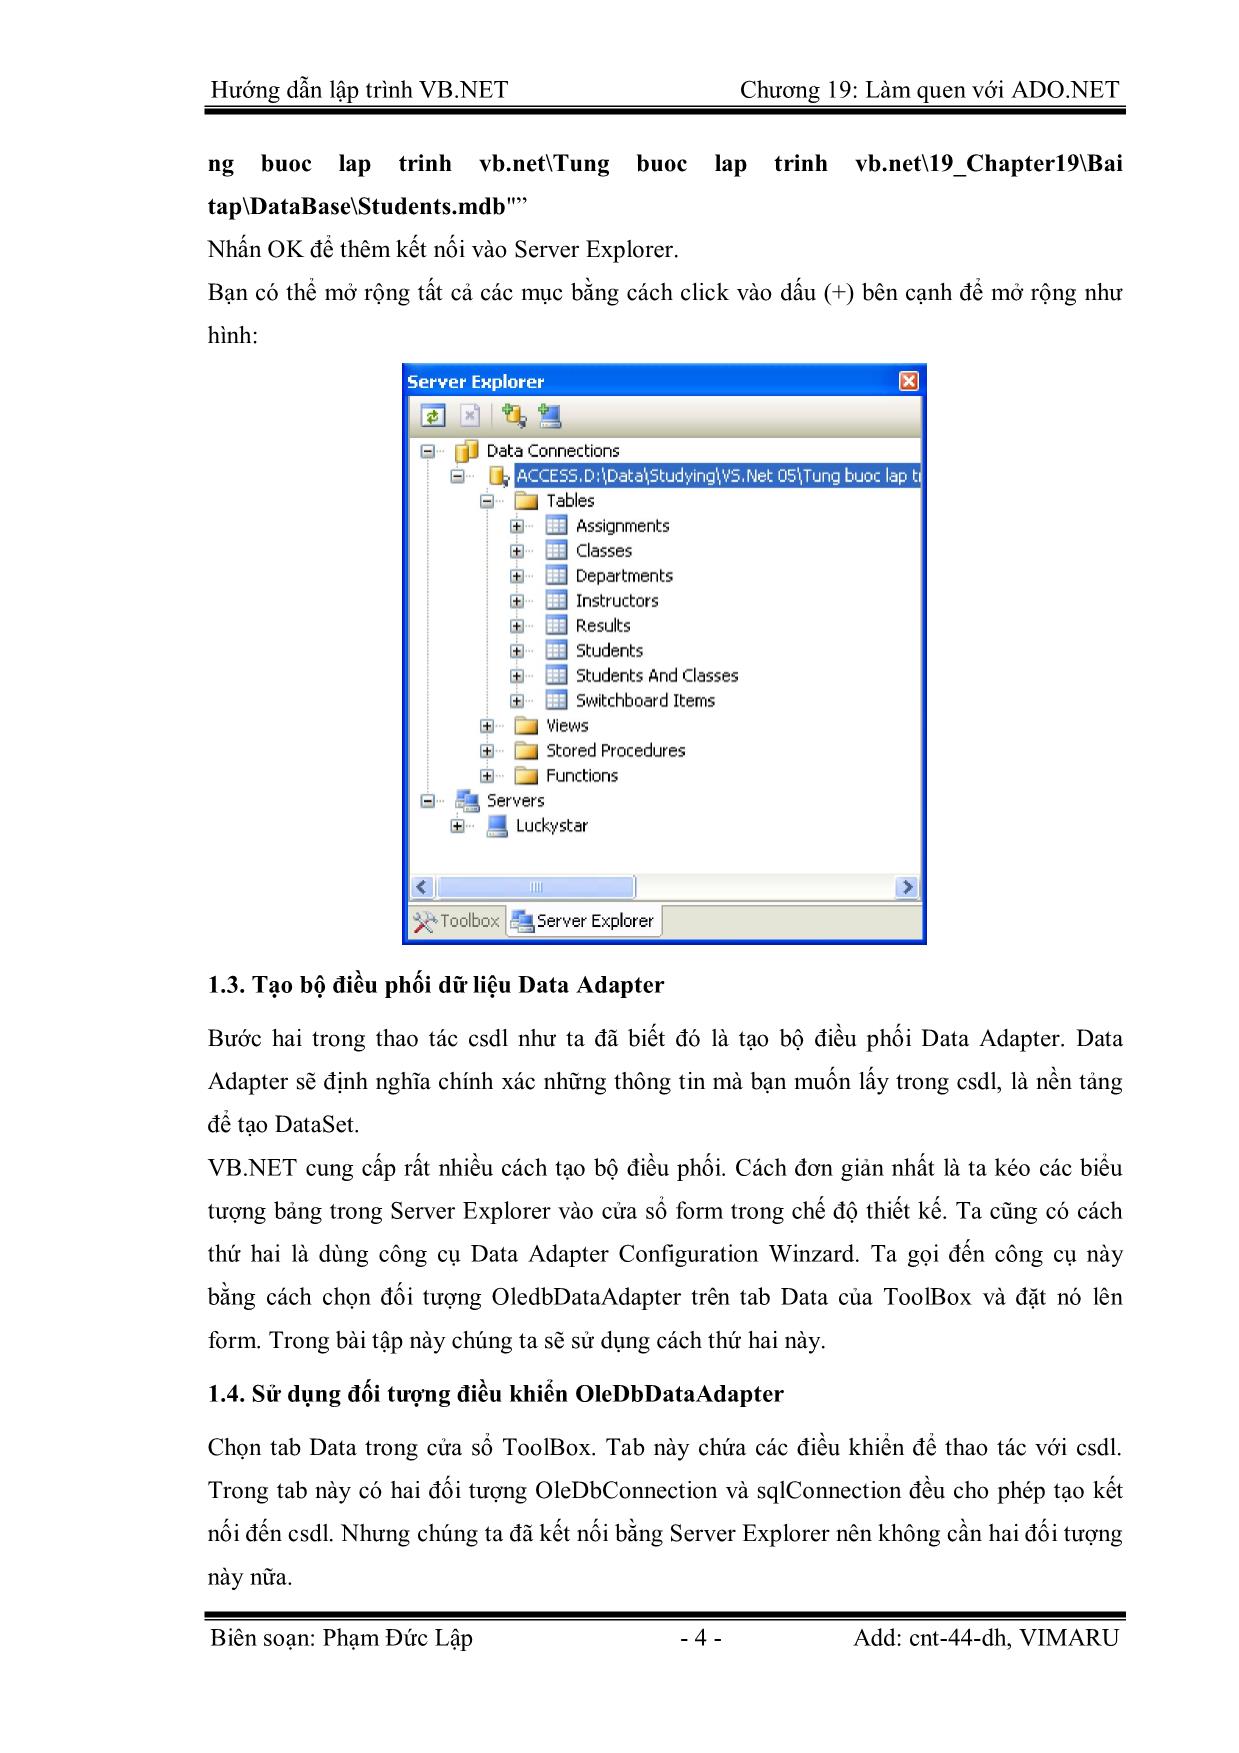 Giáo trình Hướng dẫn lập trình VB.NET - Chương 19: Làm quen với Ado.Net - Phạm Đức Lập trang 4